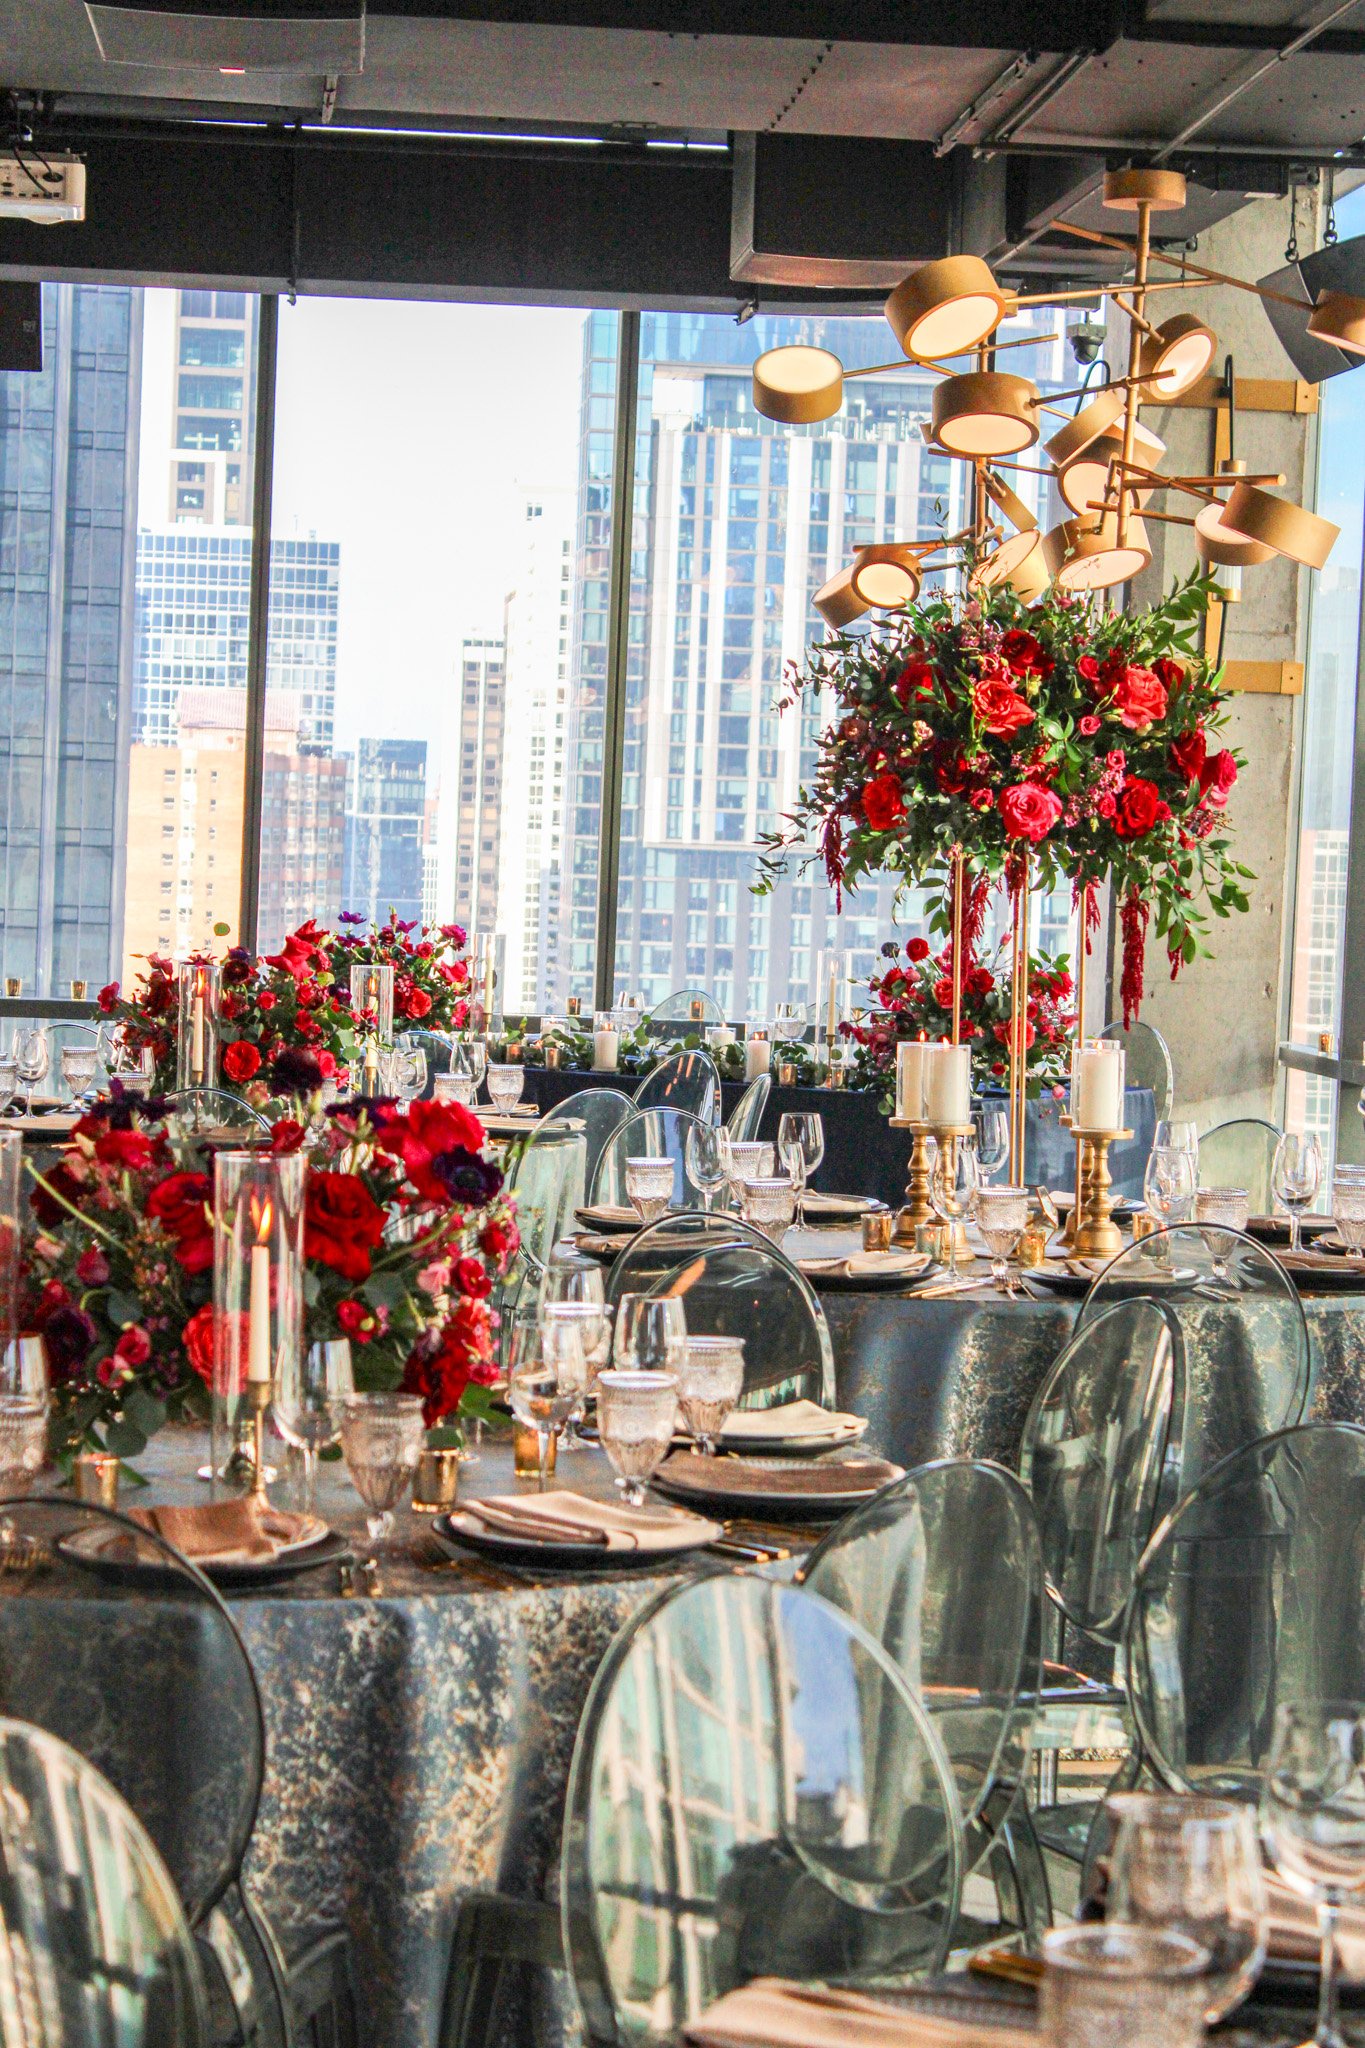 Dinner and a view 🥂🍽️🏙️

💐 @juliettanfloraldesign
🍽️ @windycitylinen
.
.
.
#twentysixchicago #eventvenue #chicagoevents #weddingreception #chicagowedding #weddingvenue #chicagoeventvenue #chicagoeventplanner #magnificentmile #eventplanning #chic